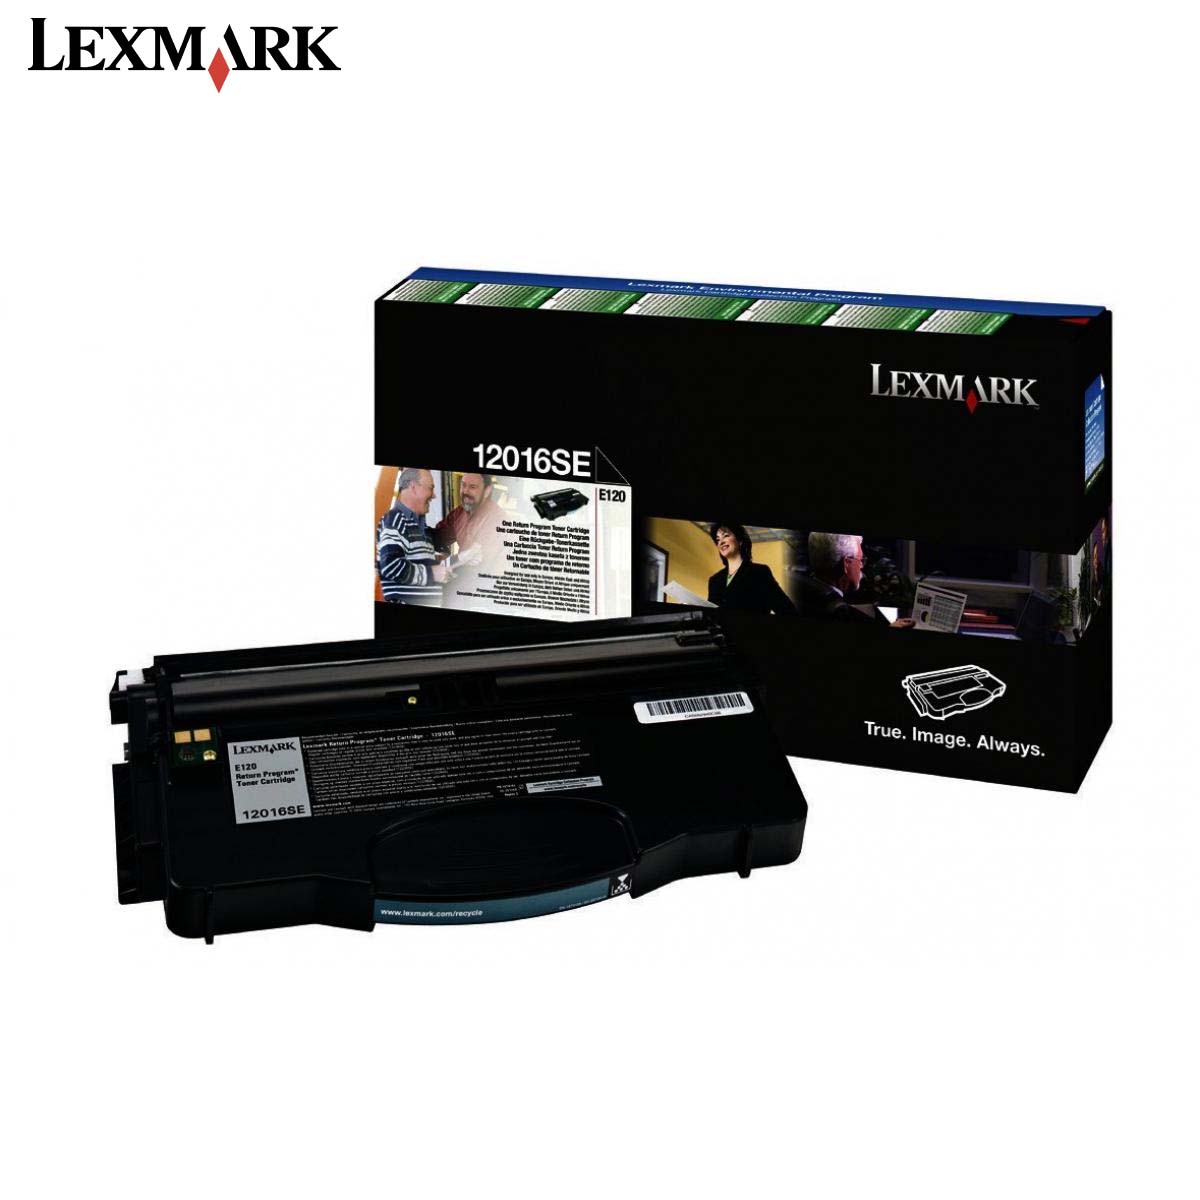 Lexmark Toner  E120 (Original)